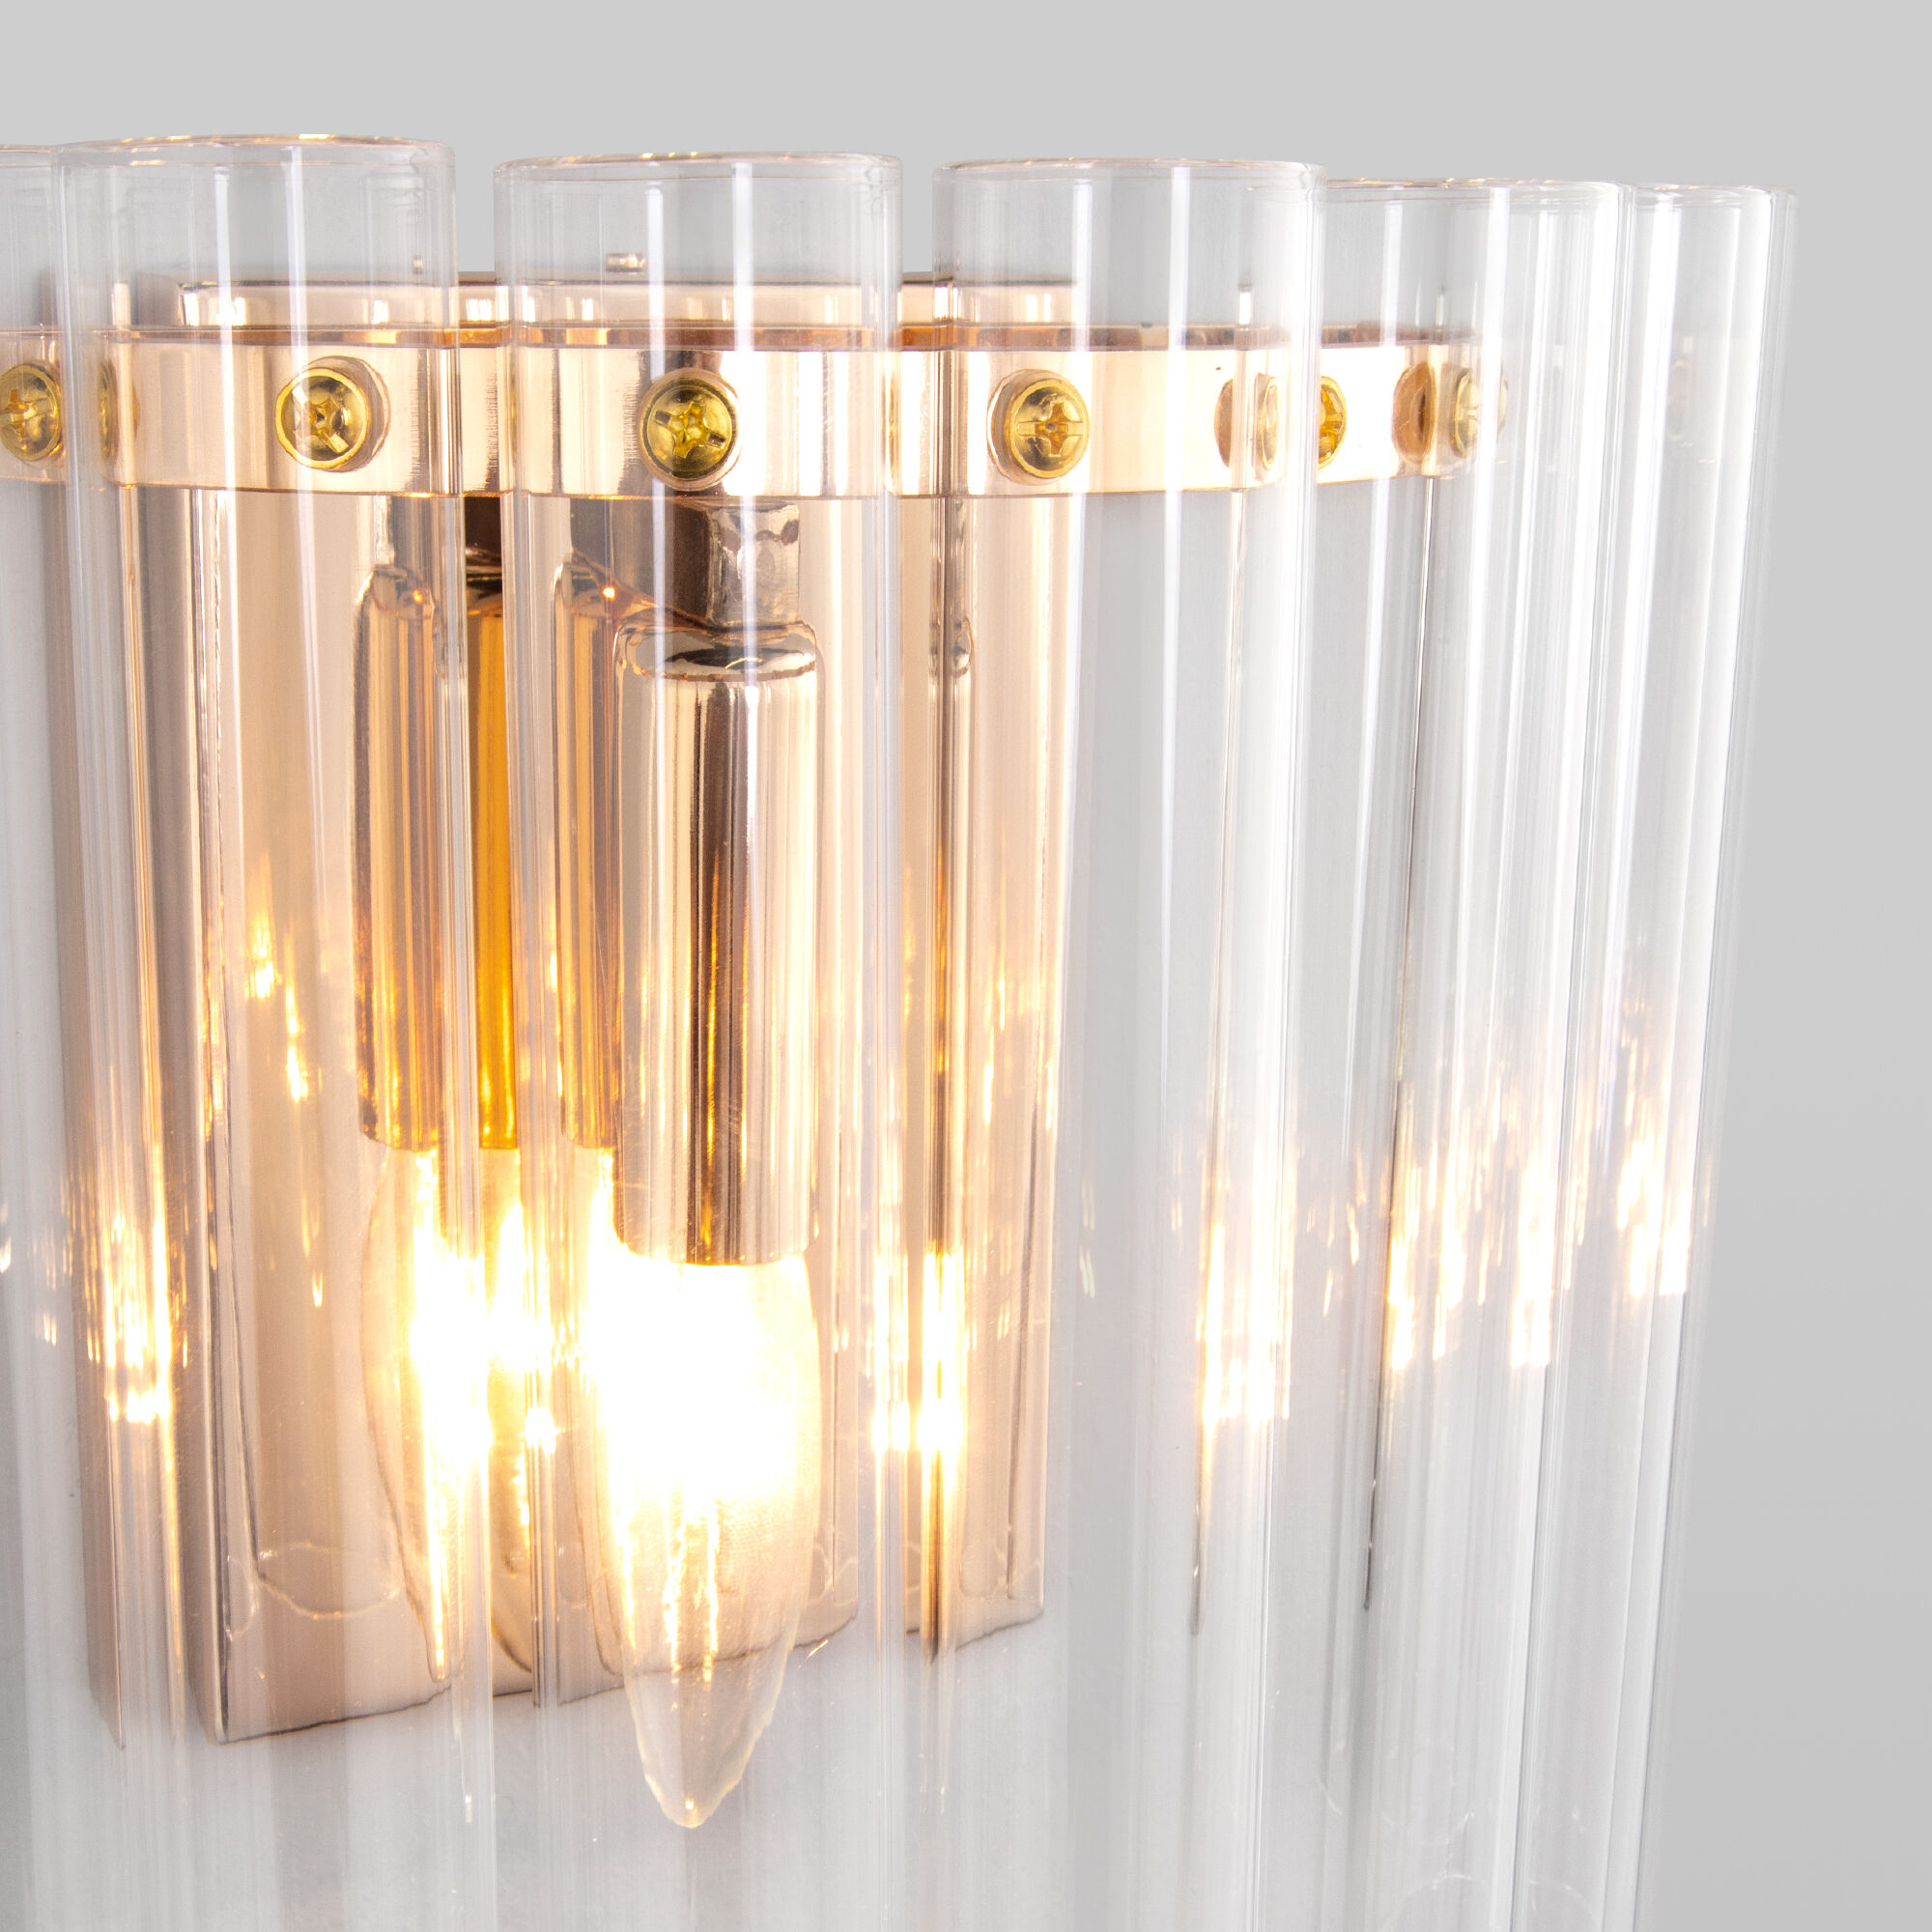 Настенный светильник со стеклянным плафоном Bogate's Flamel 373/1 золото. Фото 4